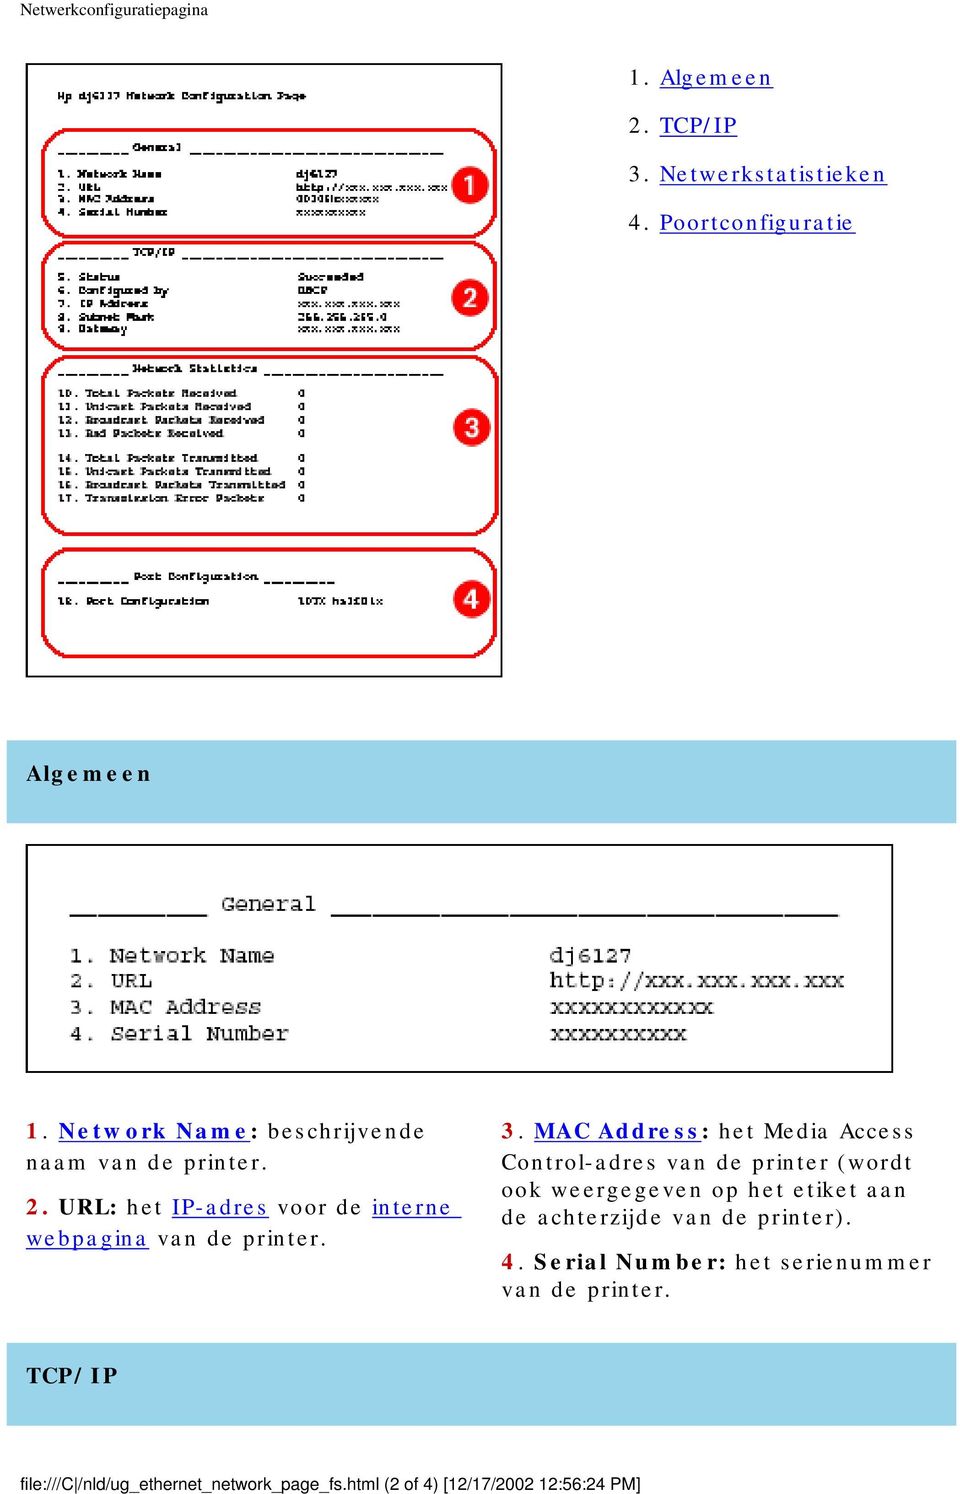 MAC Address: het Media Access Control-adres van de printer (wordt ook weergegeven op het etiket aan de achterzijde van de